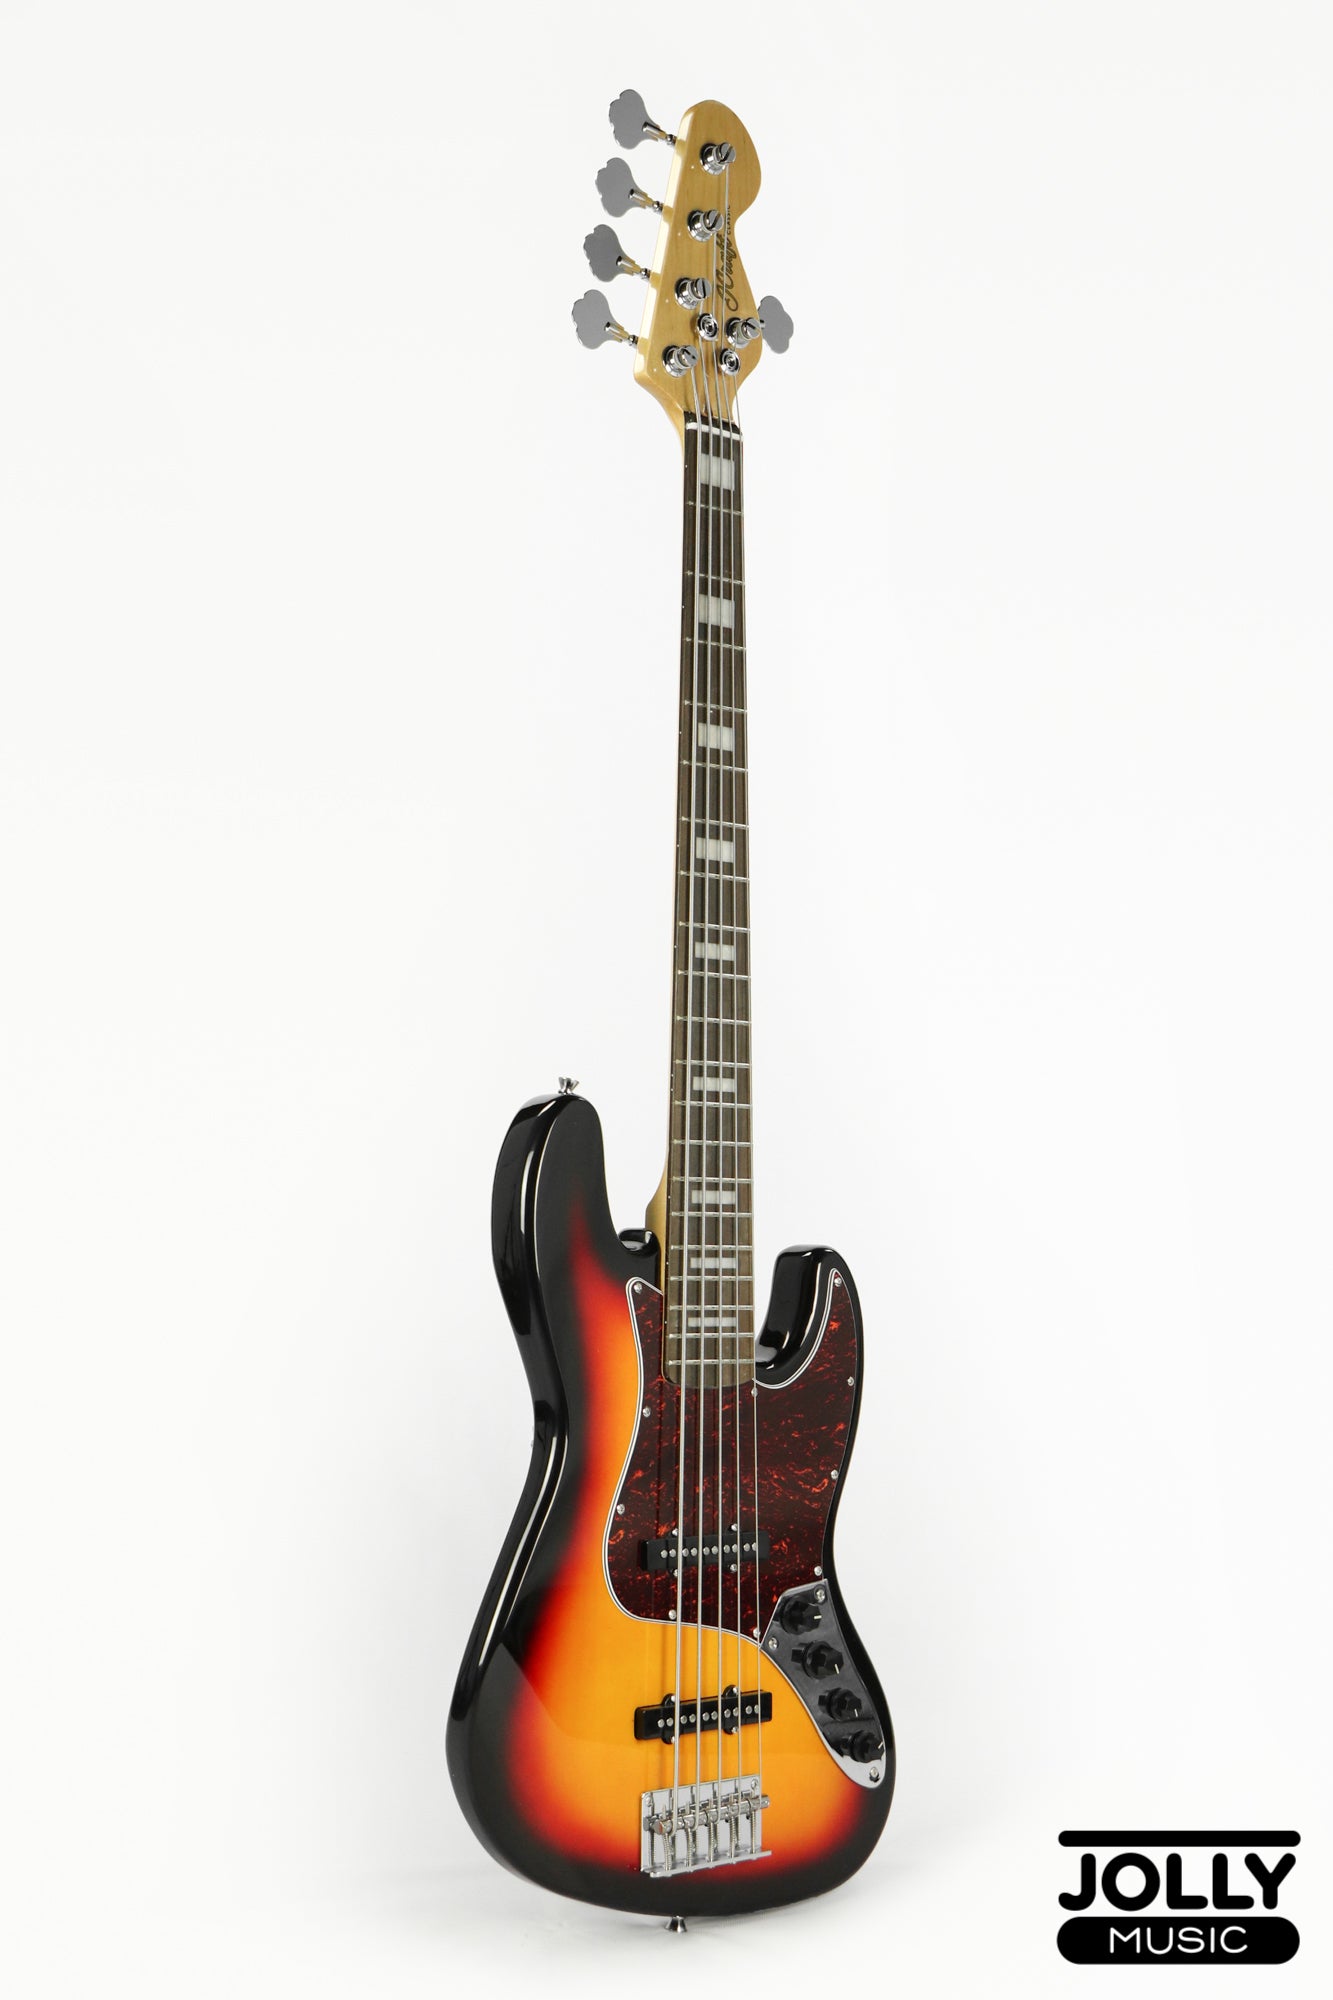 JCraft JB-2A J-Offset 5-String Bass Guitar - Sunburst